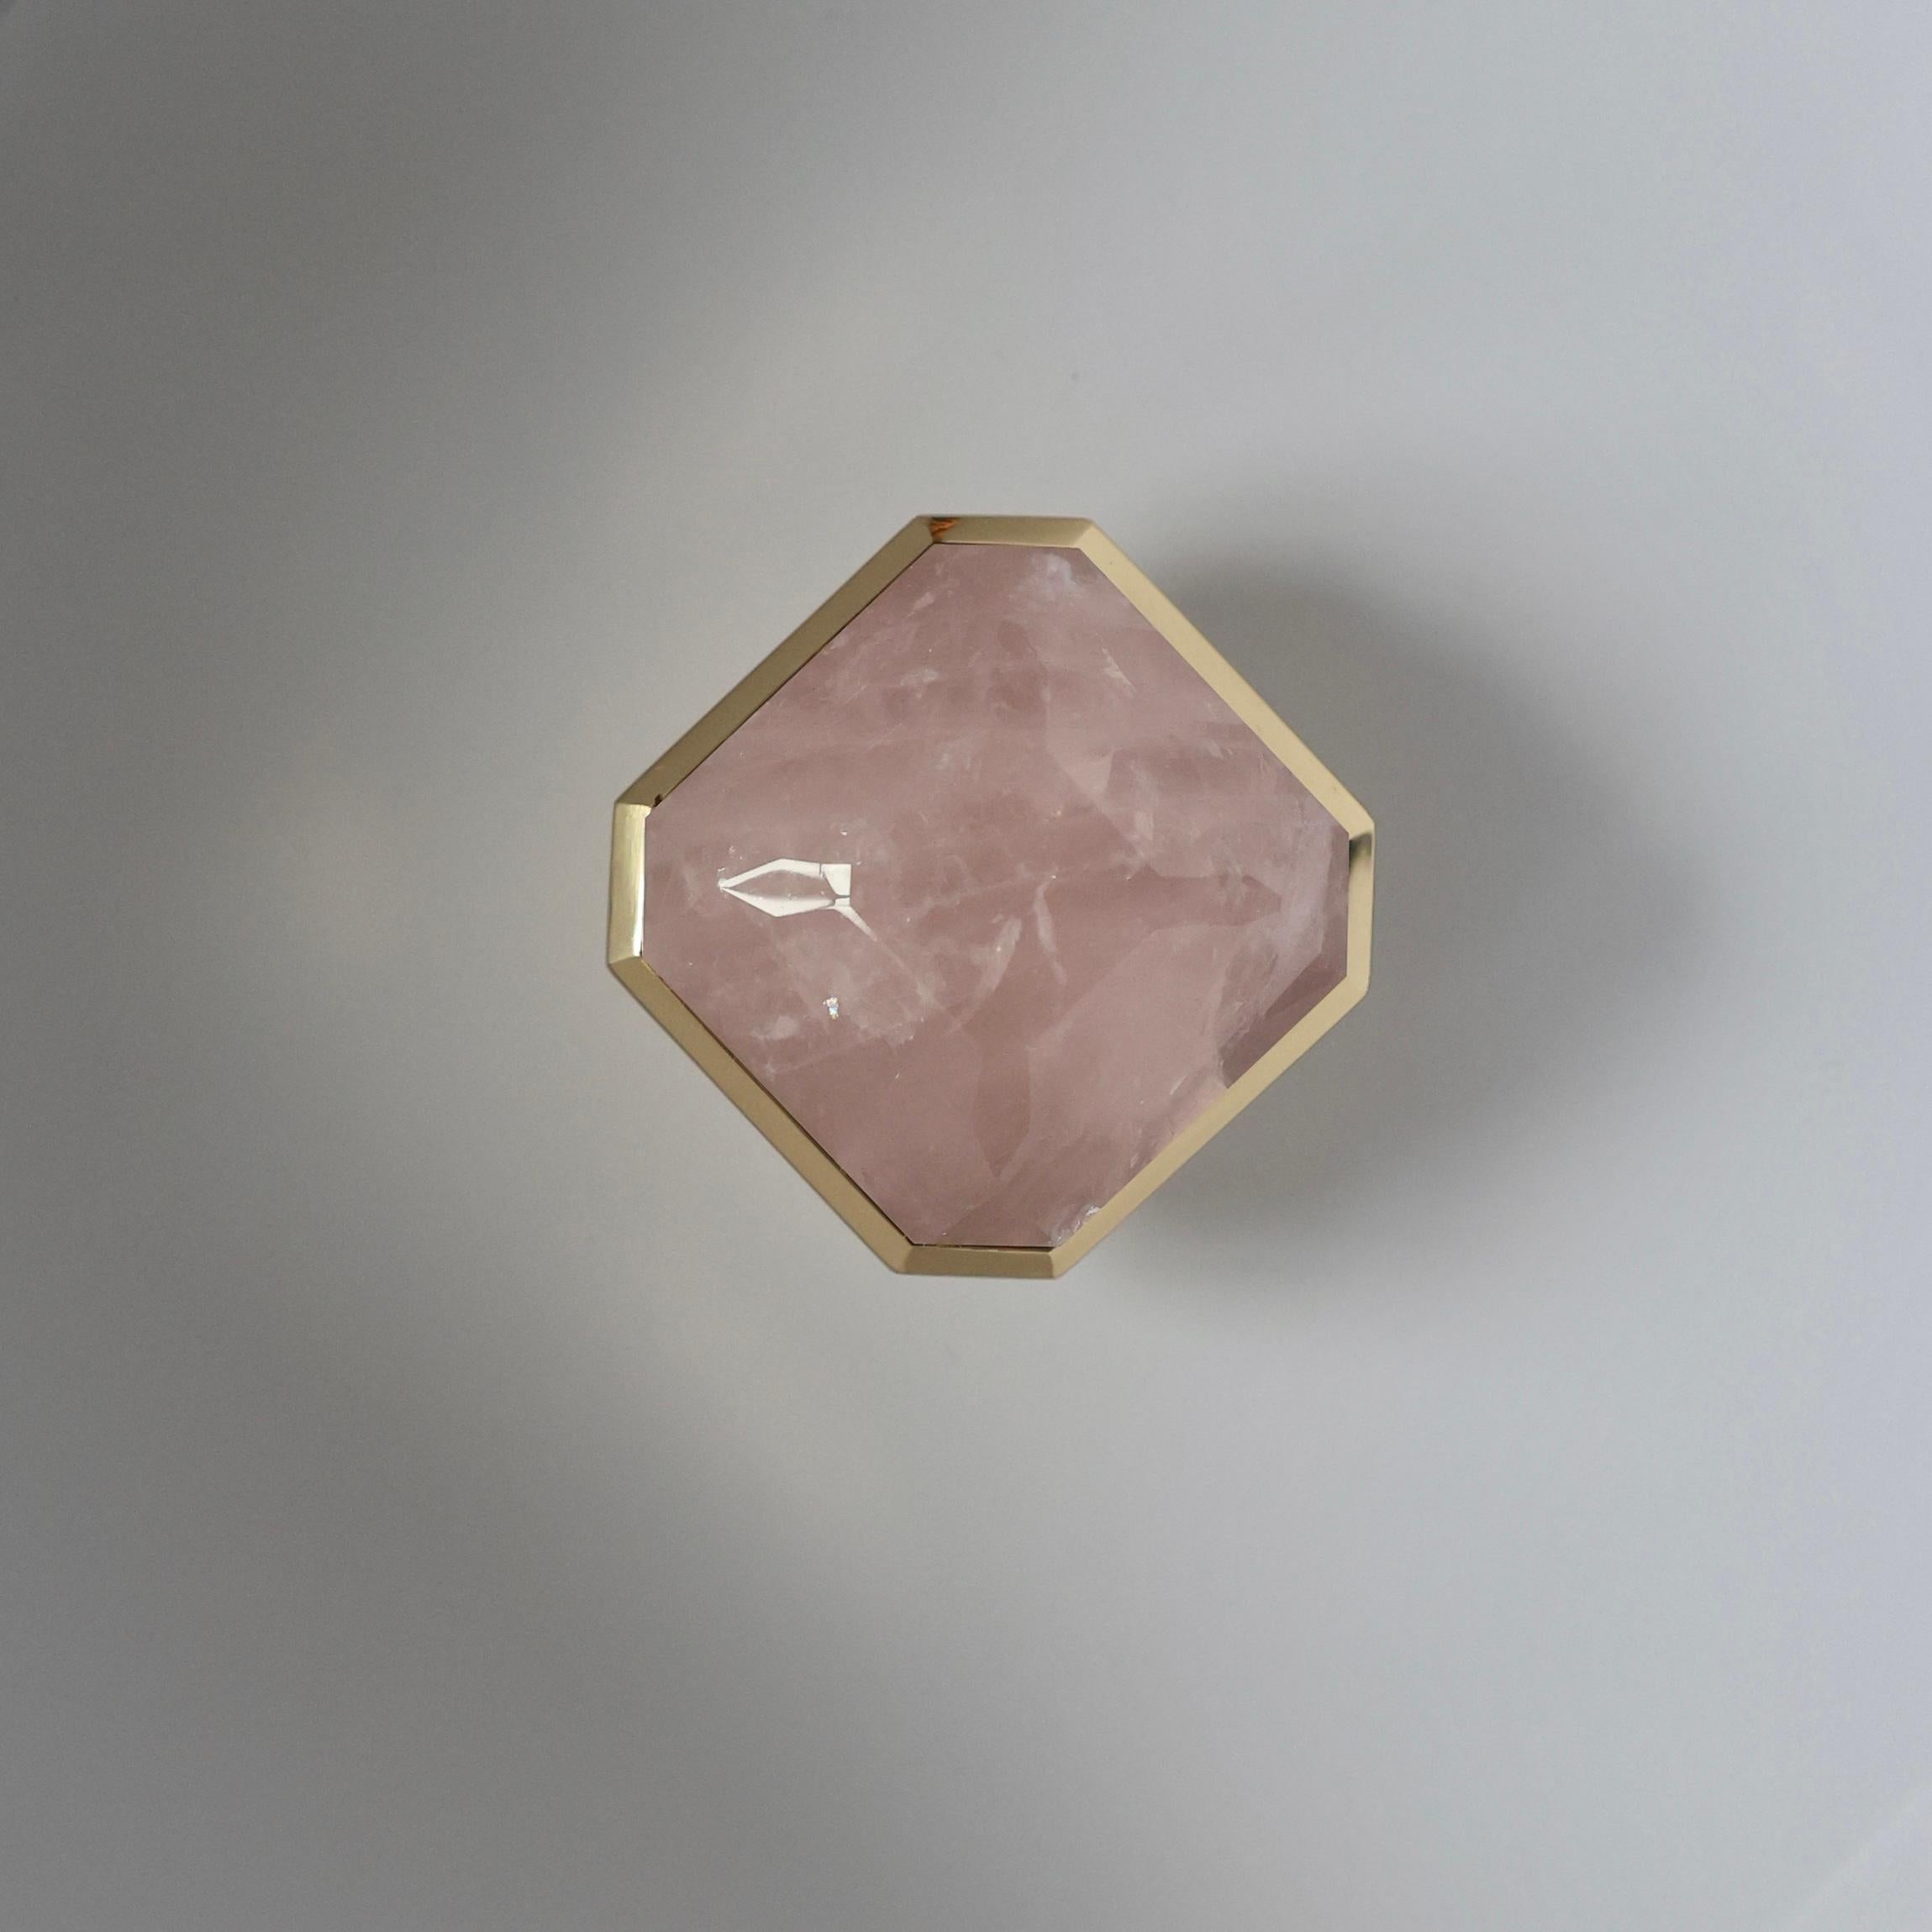 Knöpfe aus rosafarbenem Bergkristall mit Diamantschliff und poliertem Messingdekor, entworfen von Phoenix 

Metallausführung und individuelle Größe auf Anfrage.
